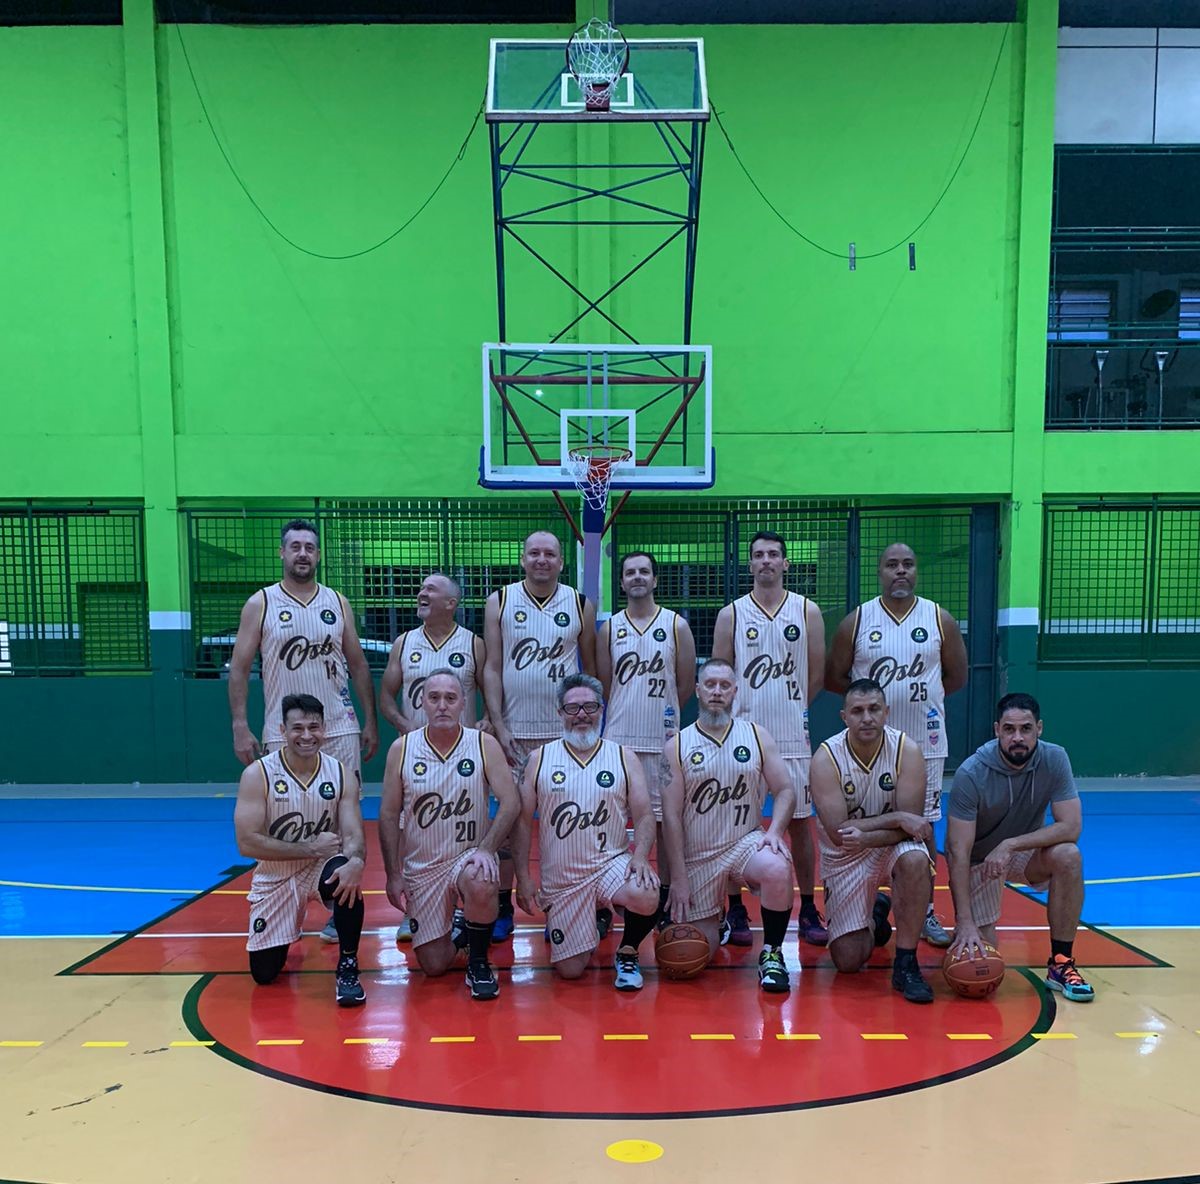 Old School Basketball de Nova Odessa é bicampeão do Interclubes  Metropolitano